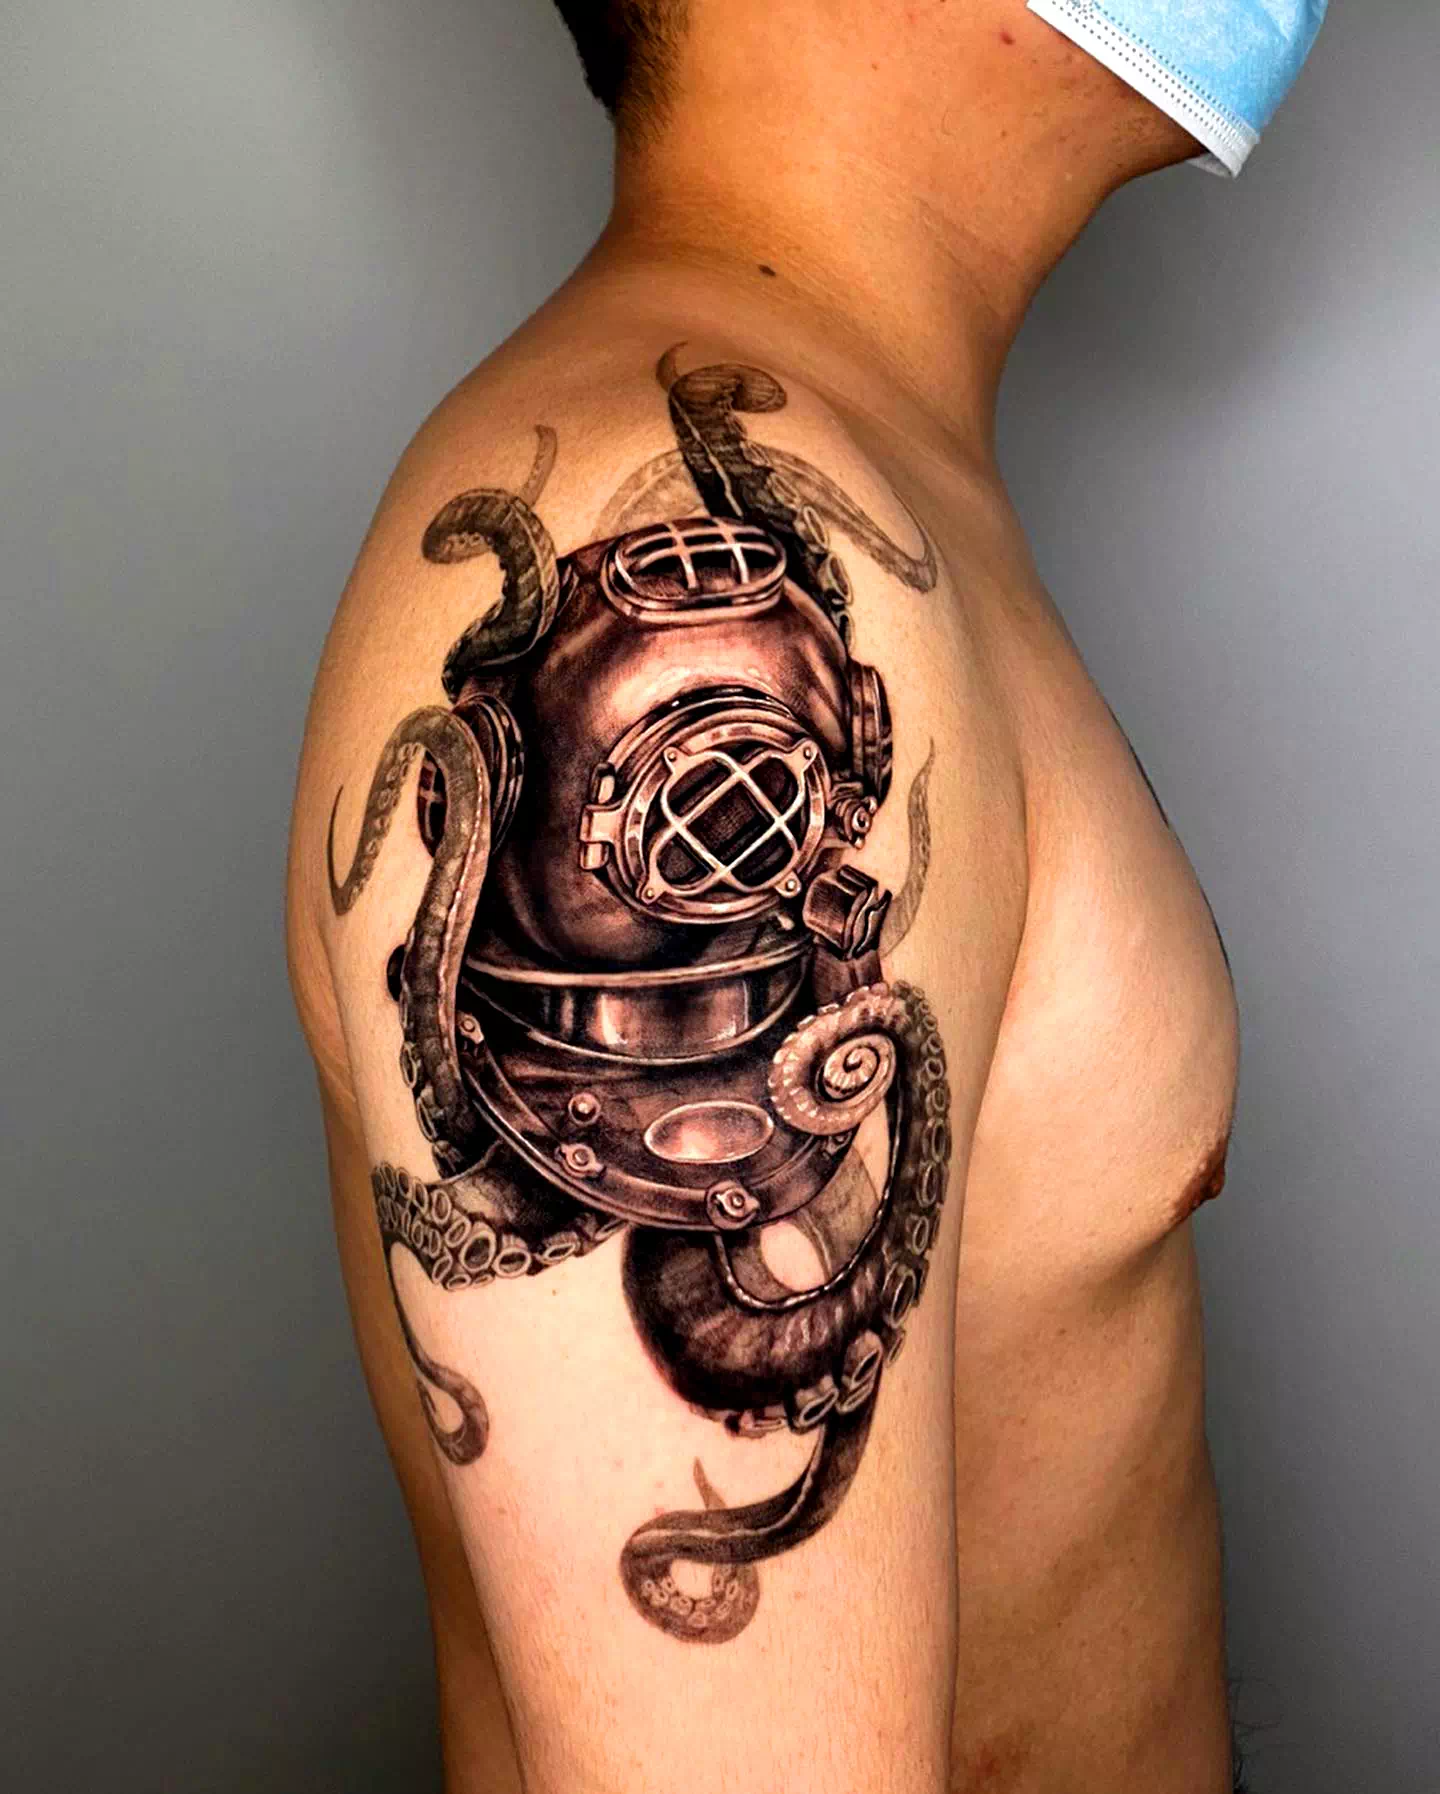 Tatuaje de pulpo y barco 3